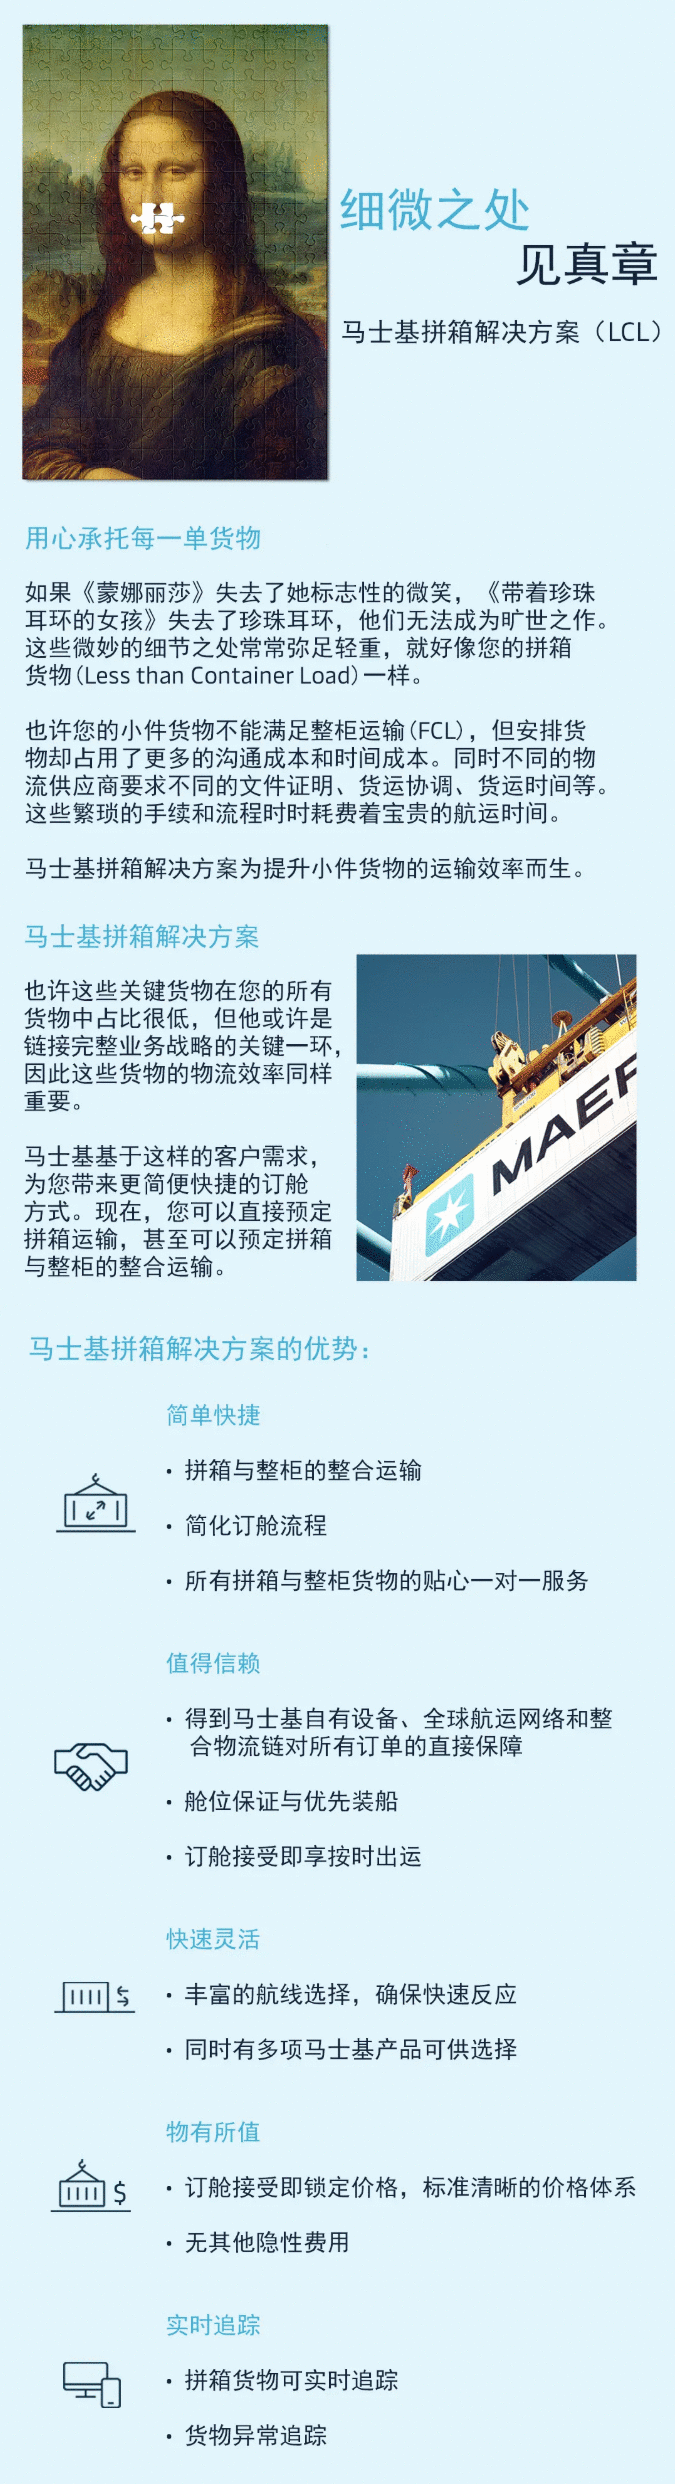 马士基全新推出海运拼箱服务，周运营超800条航线